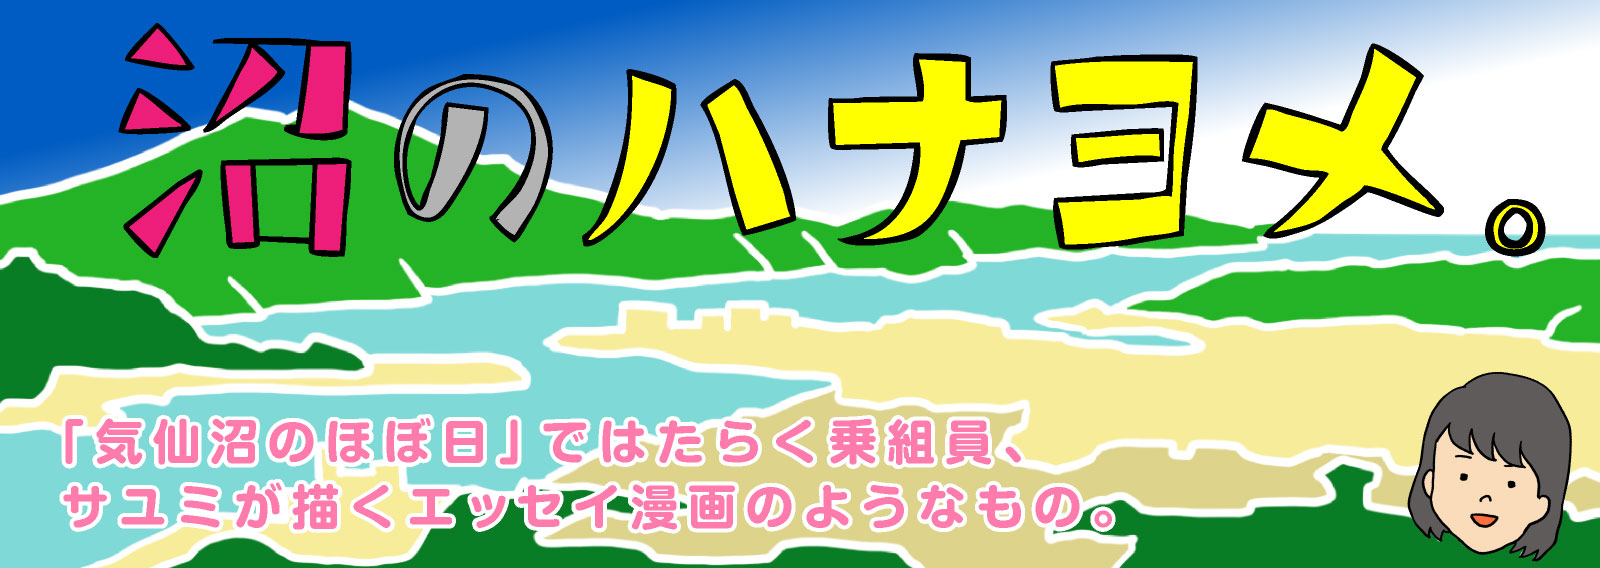 沼のハナヨメ。
「気仙沼のほぼ日」ではたらく乗組員、
サユミが描くエッセイ漫画のようなもの。